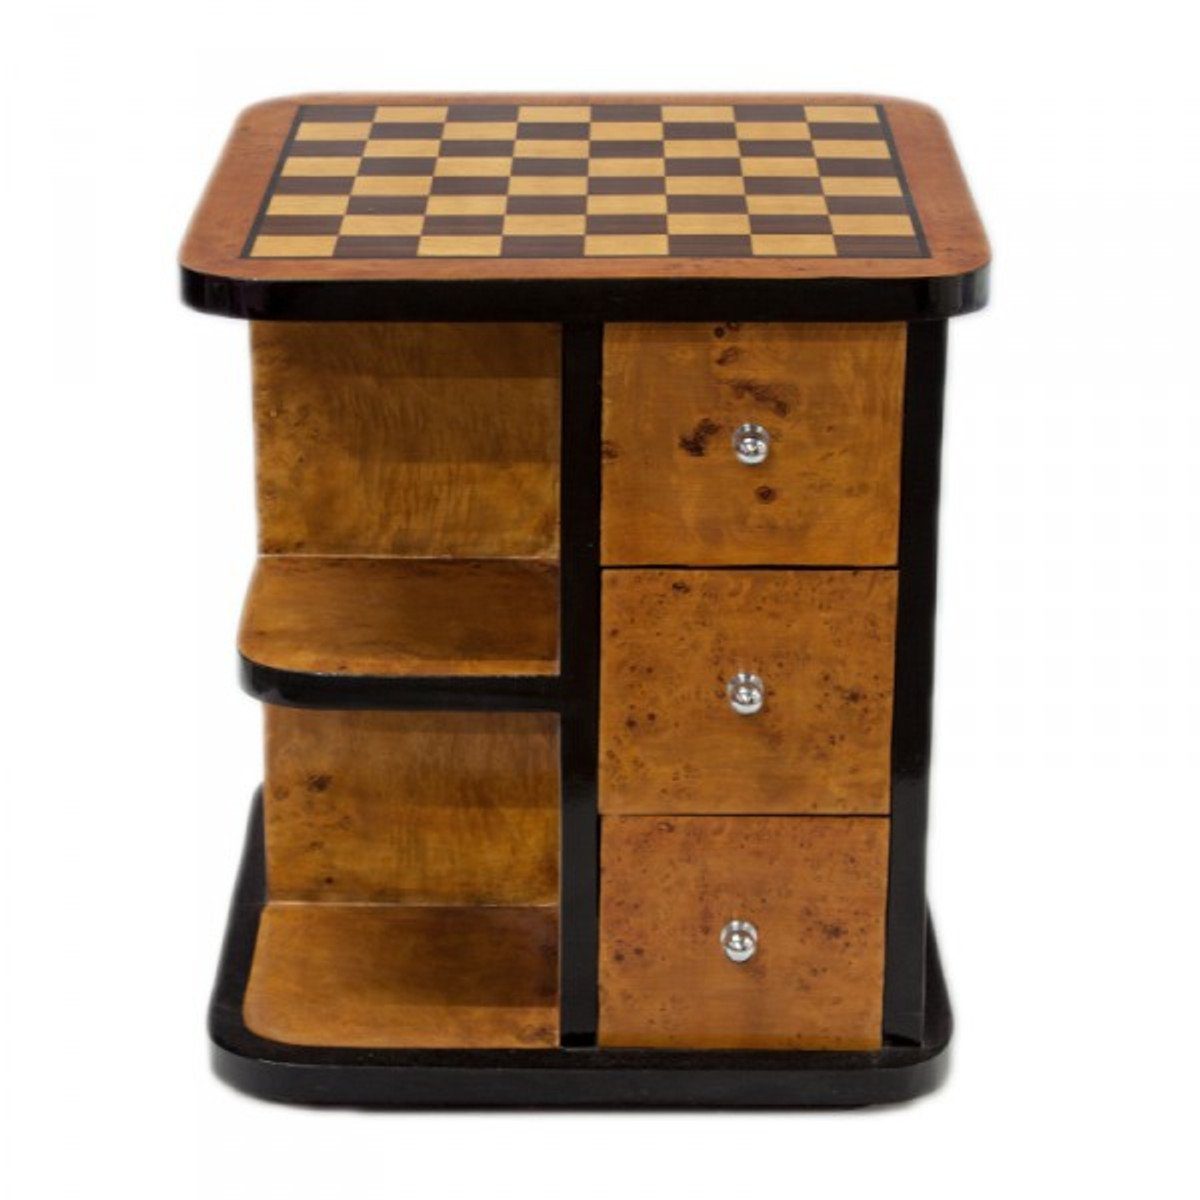 Casa Padrino Gamingtisch Art Deco Spieltisch Schach / Dame Mahagoni L 50 x B 50 x H 55 cm - Möbel Antik Stil Barock